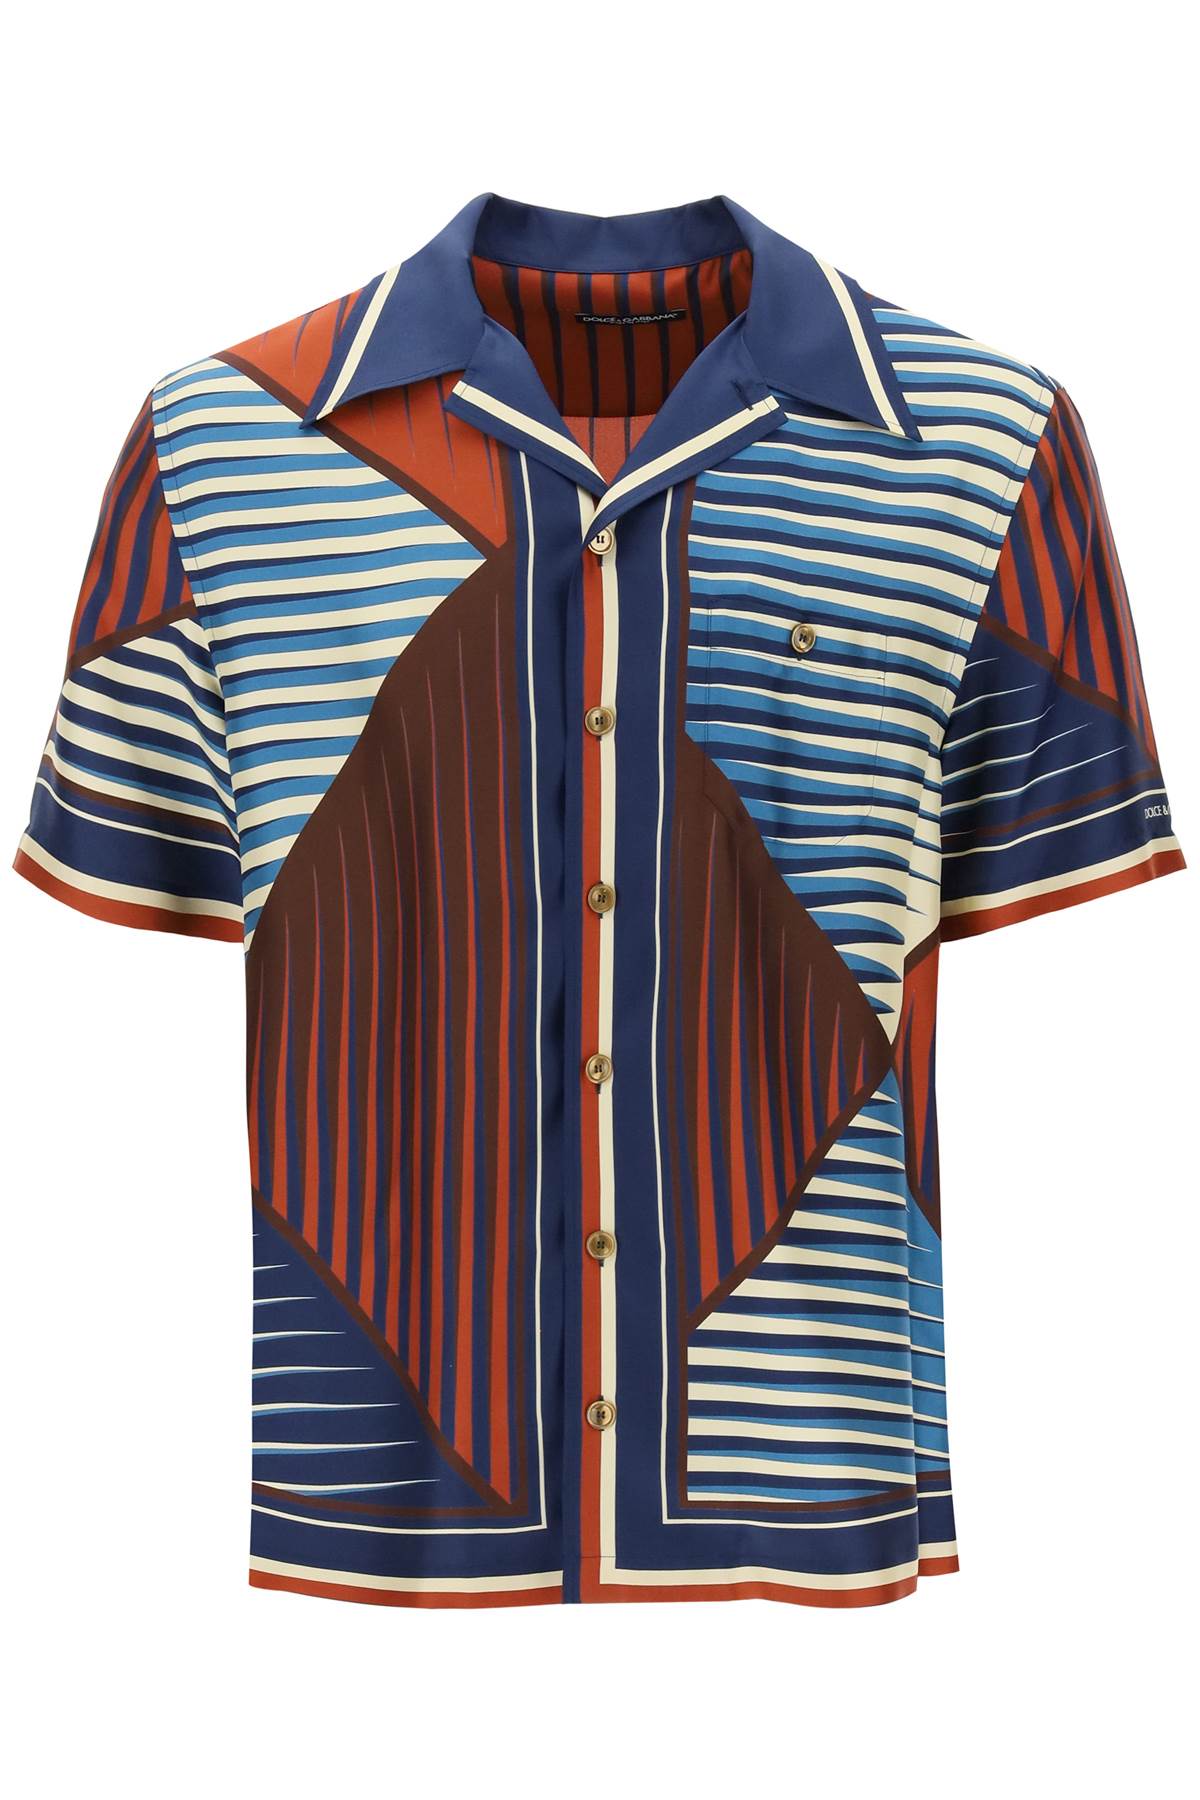 Dolce & gabbana "geometric pattern bowling shirt with-0